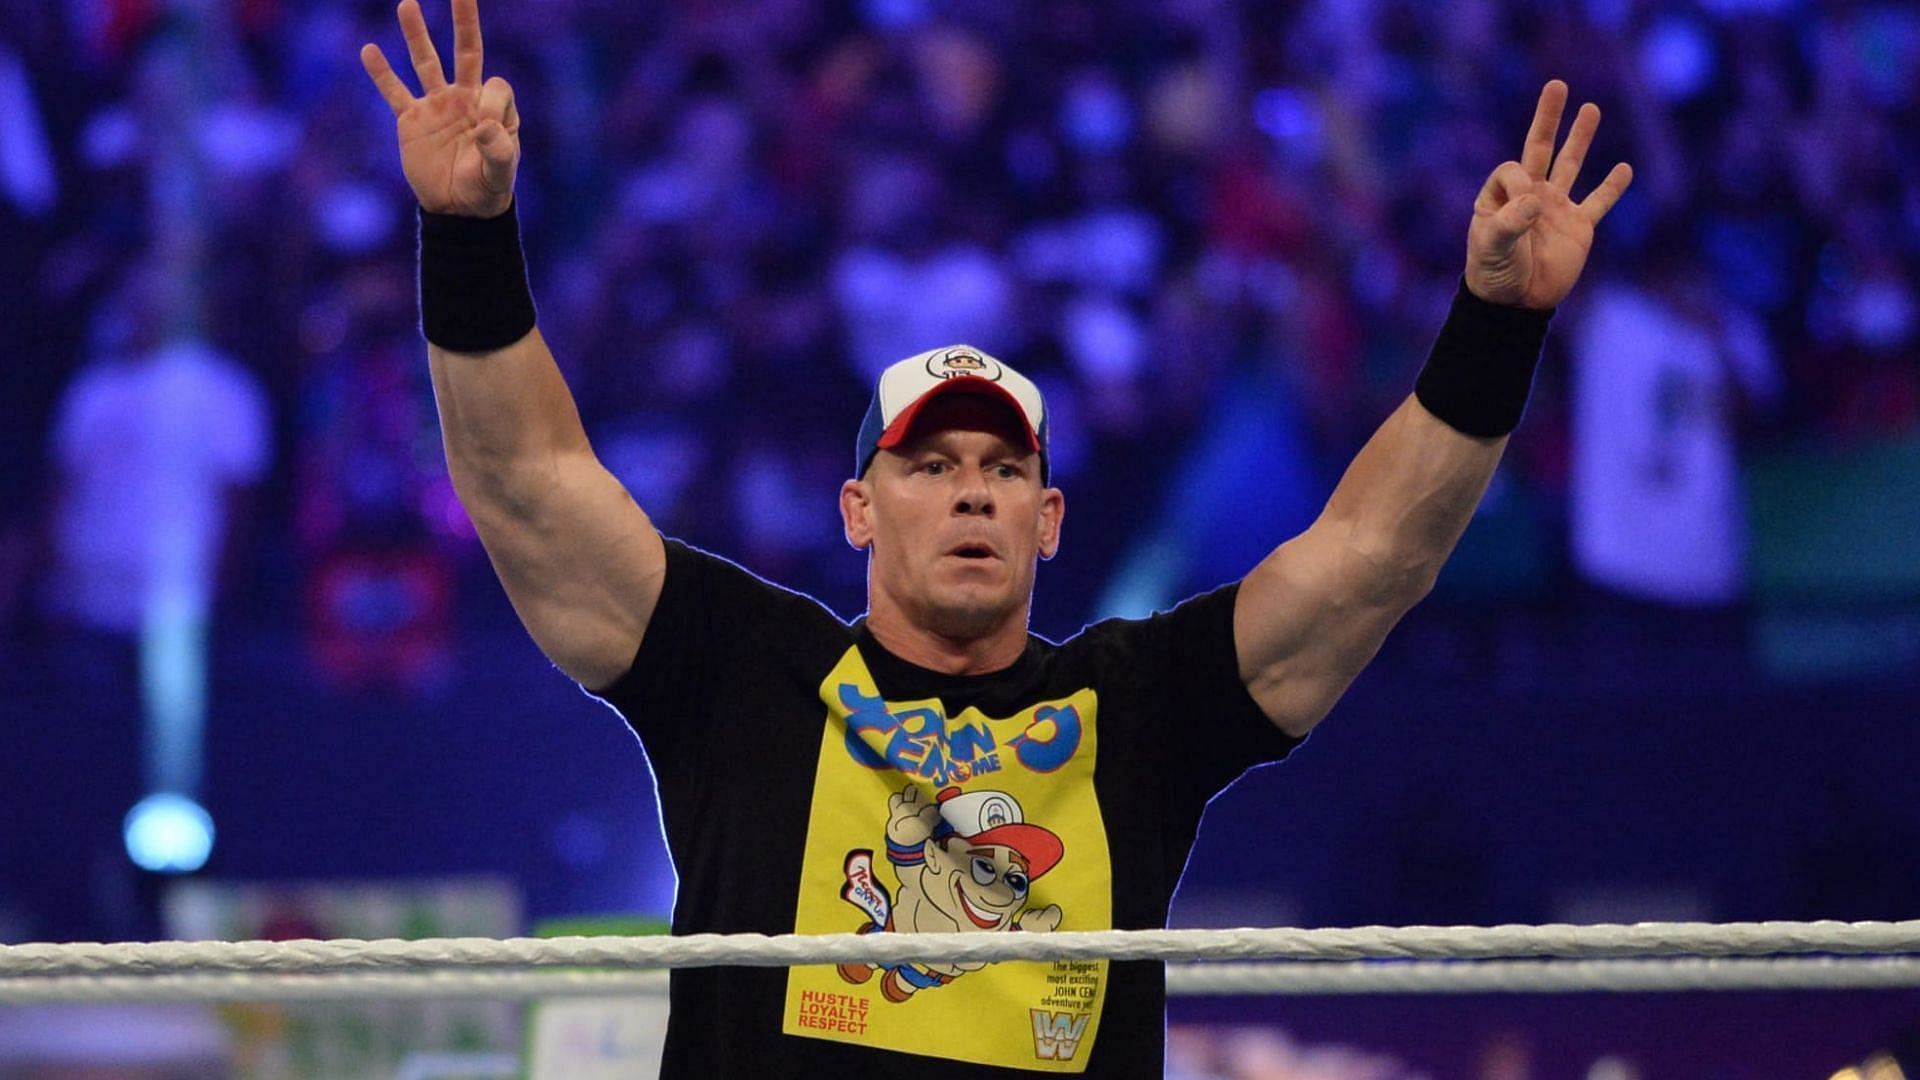 John Cena's Return Opponent Revealed